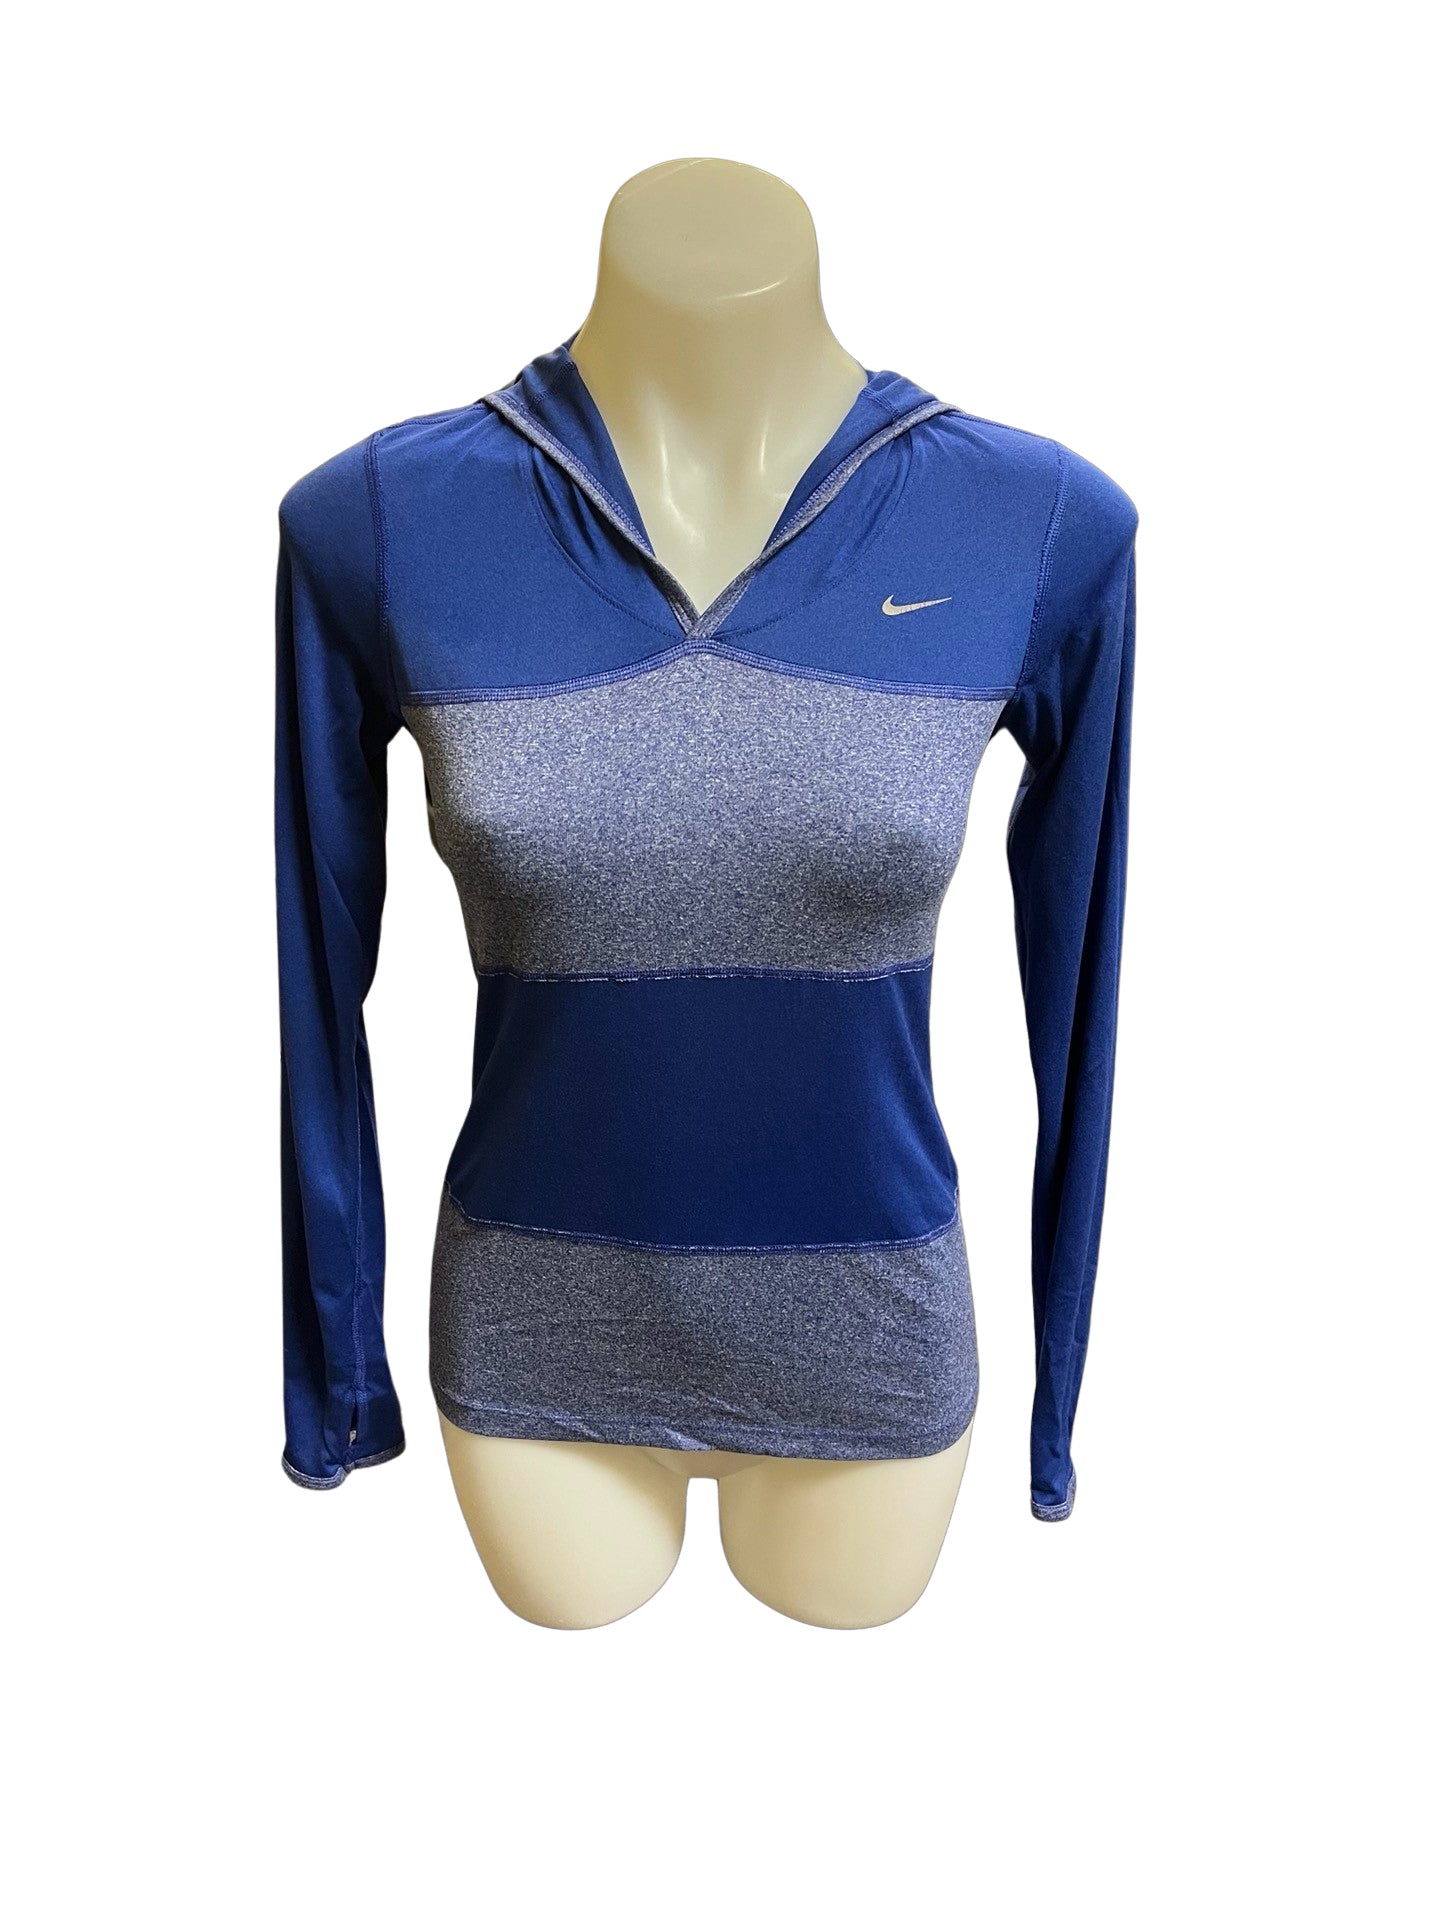 Nike Size S Blue Athletic wear